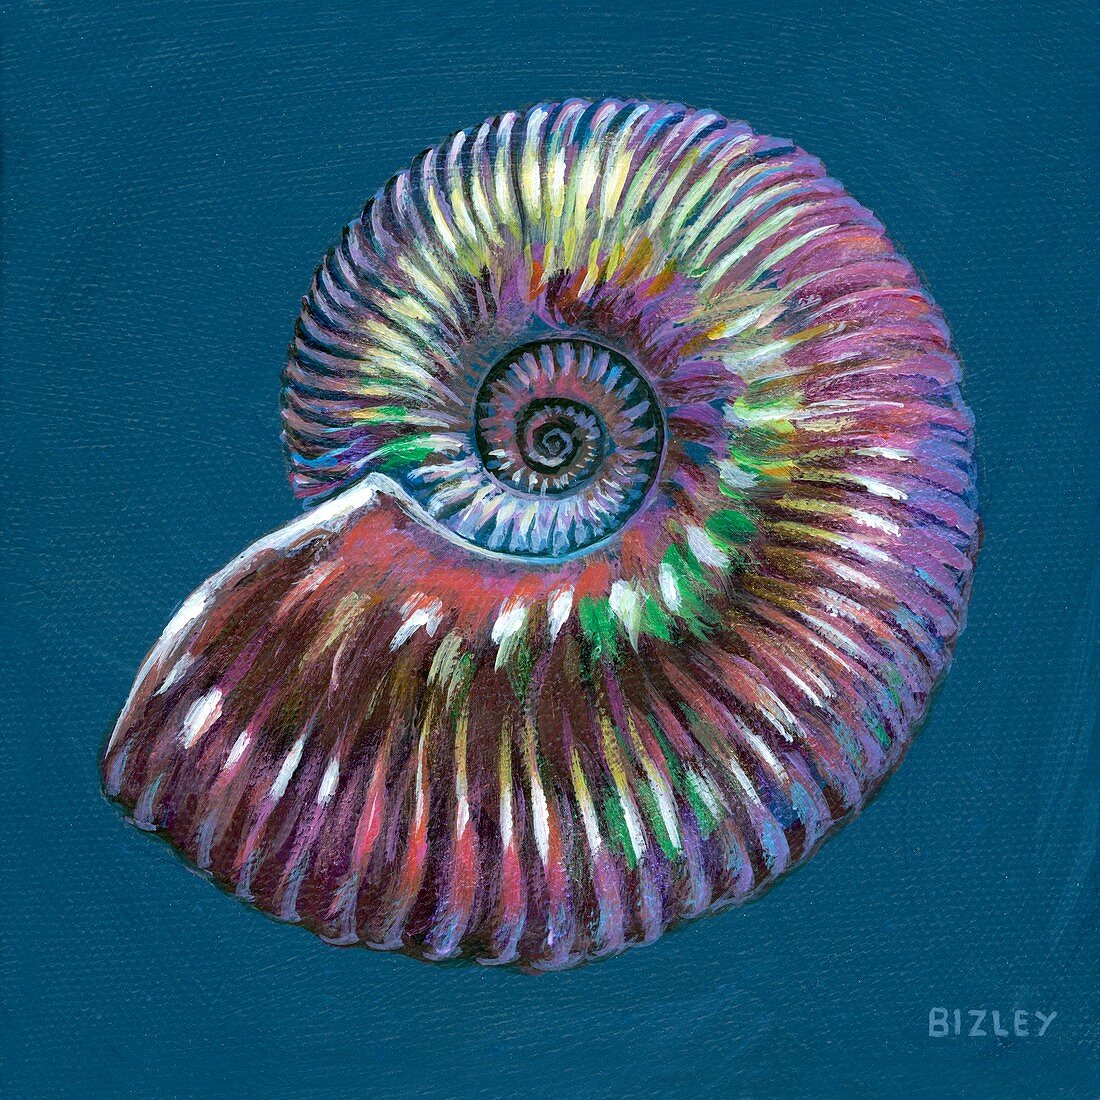 Fossil Quenstedtoceras ammonite, illustration